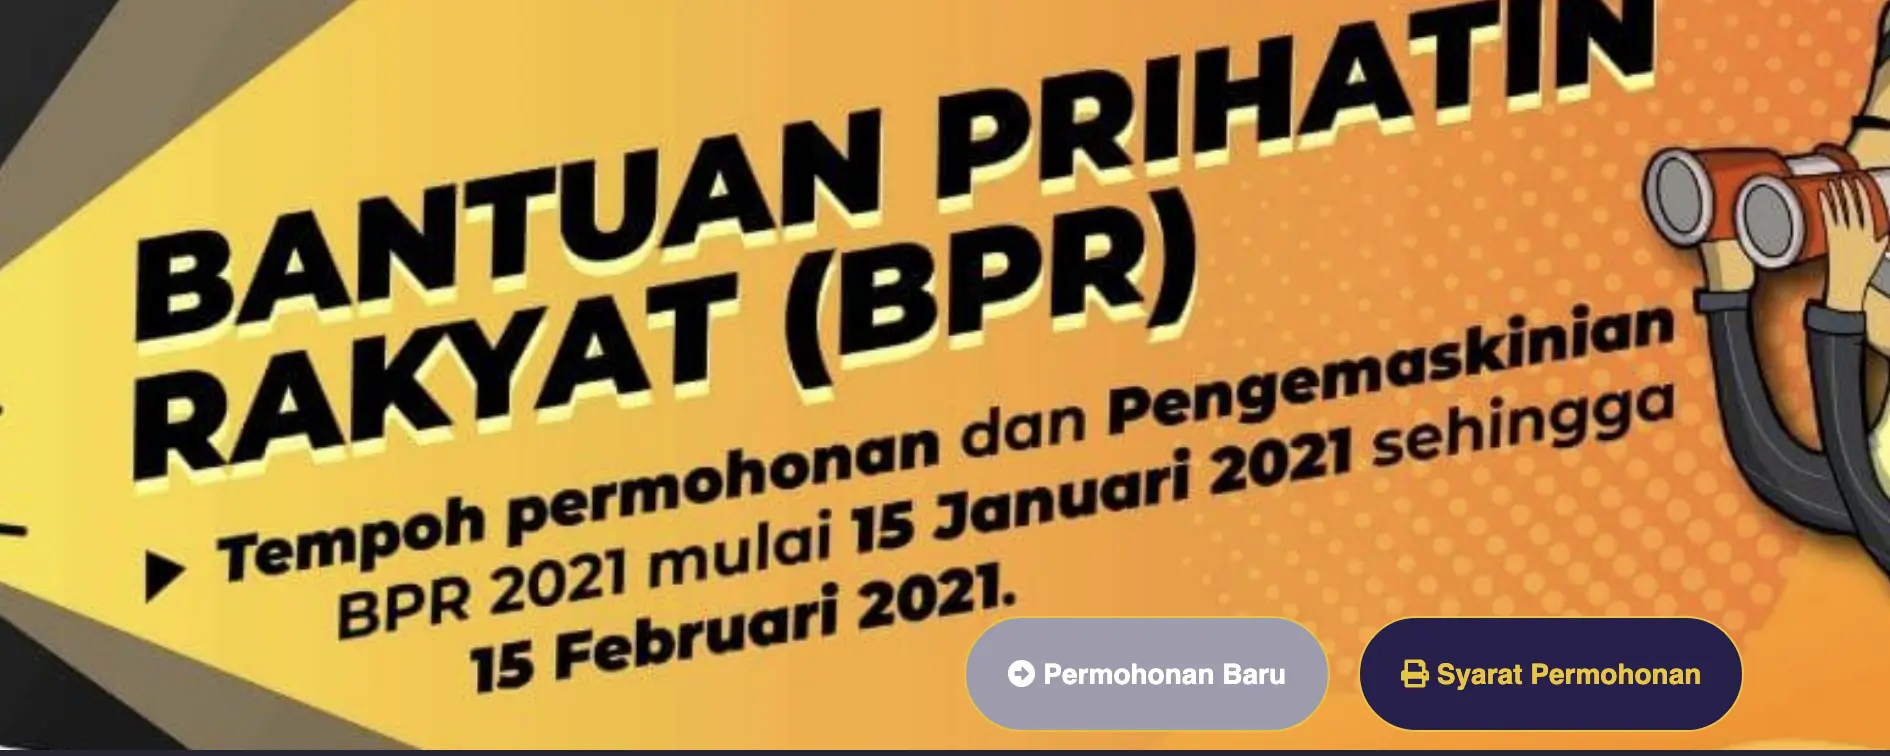 Borang Kemaskini & Permohonan Baru BPR 2021